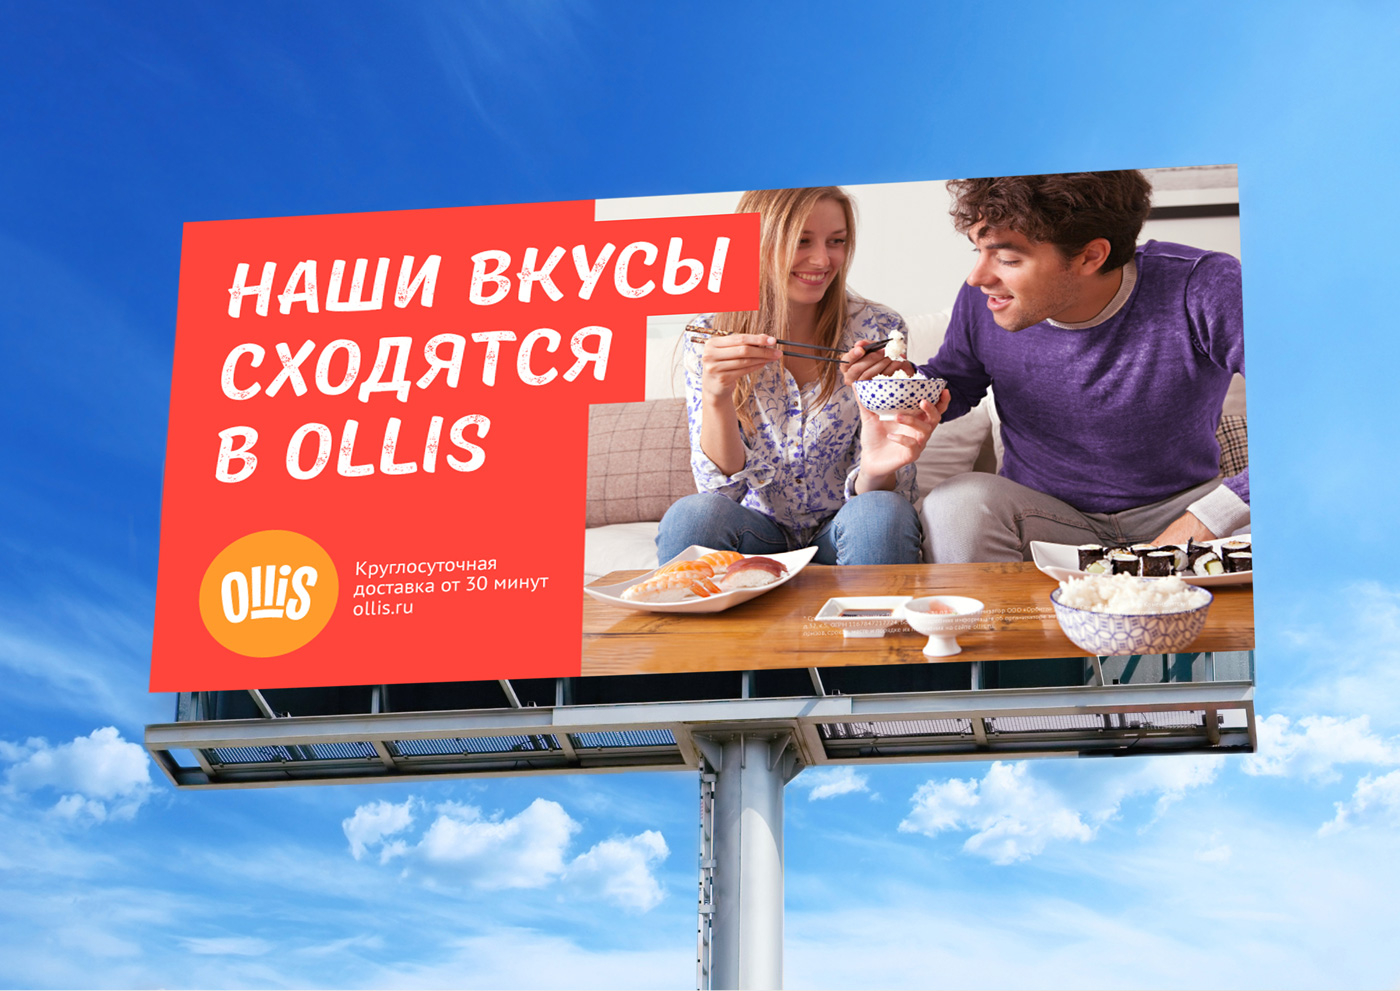 Дизайн рекламы сети ресторанов Ollis